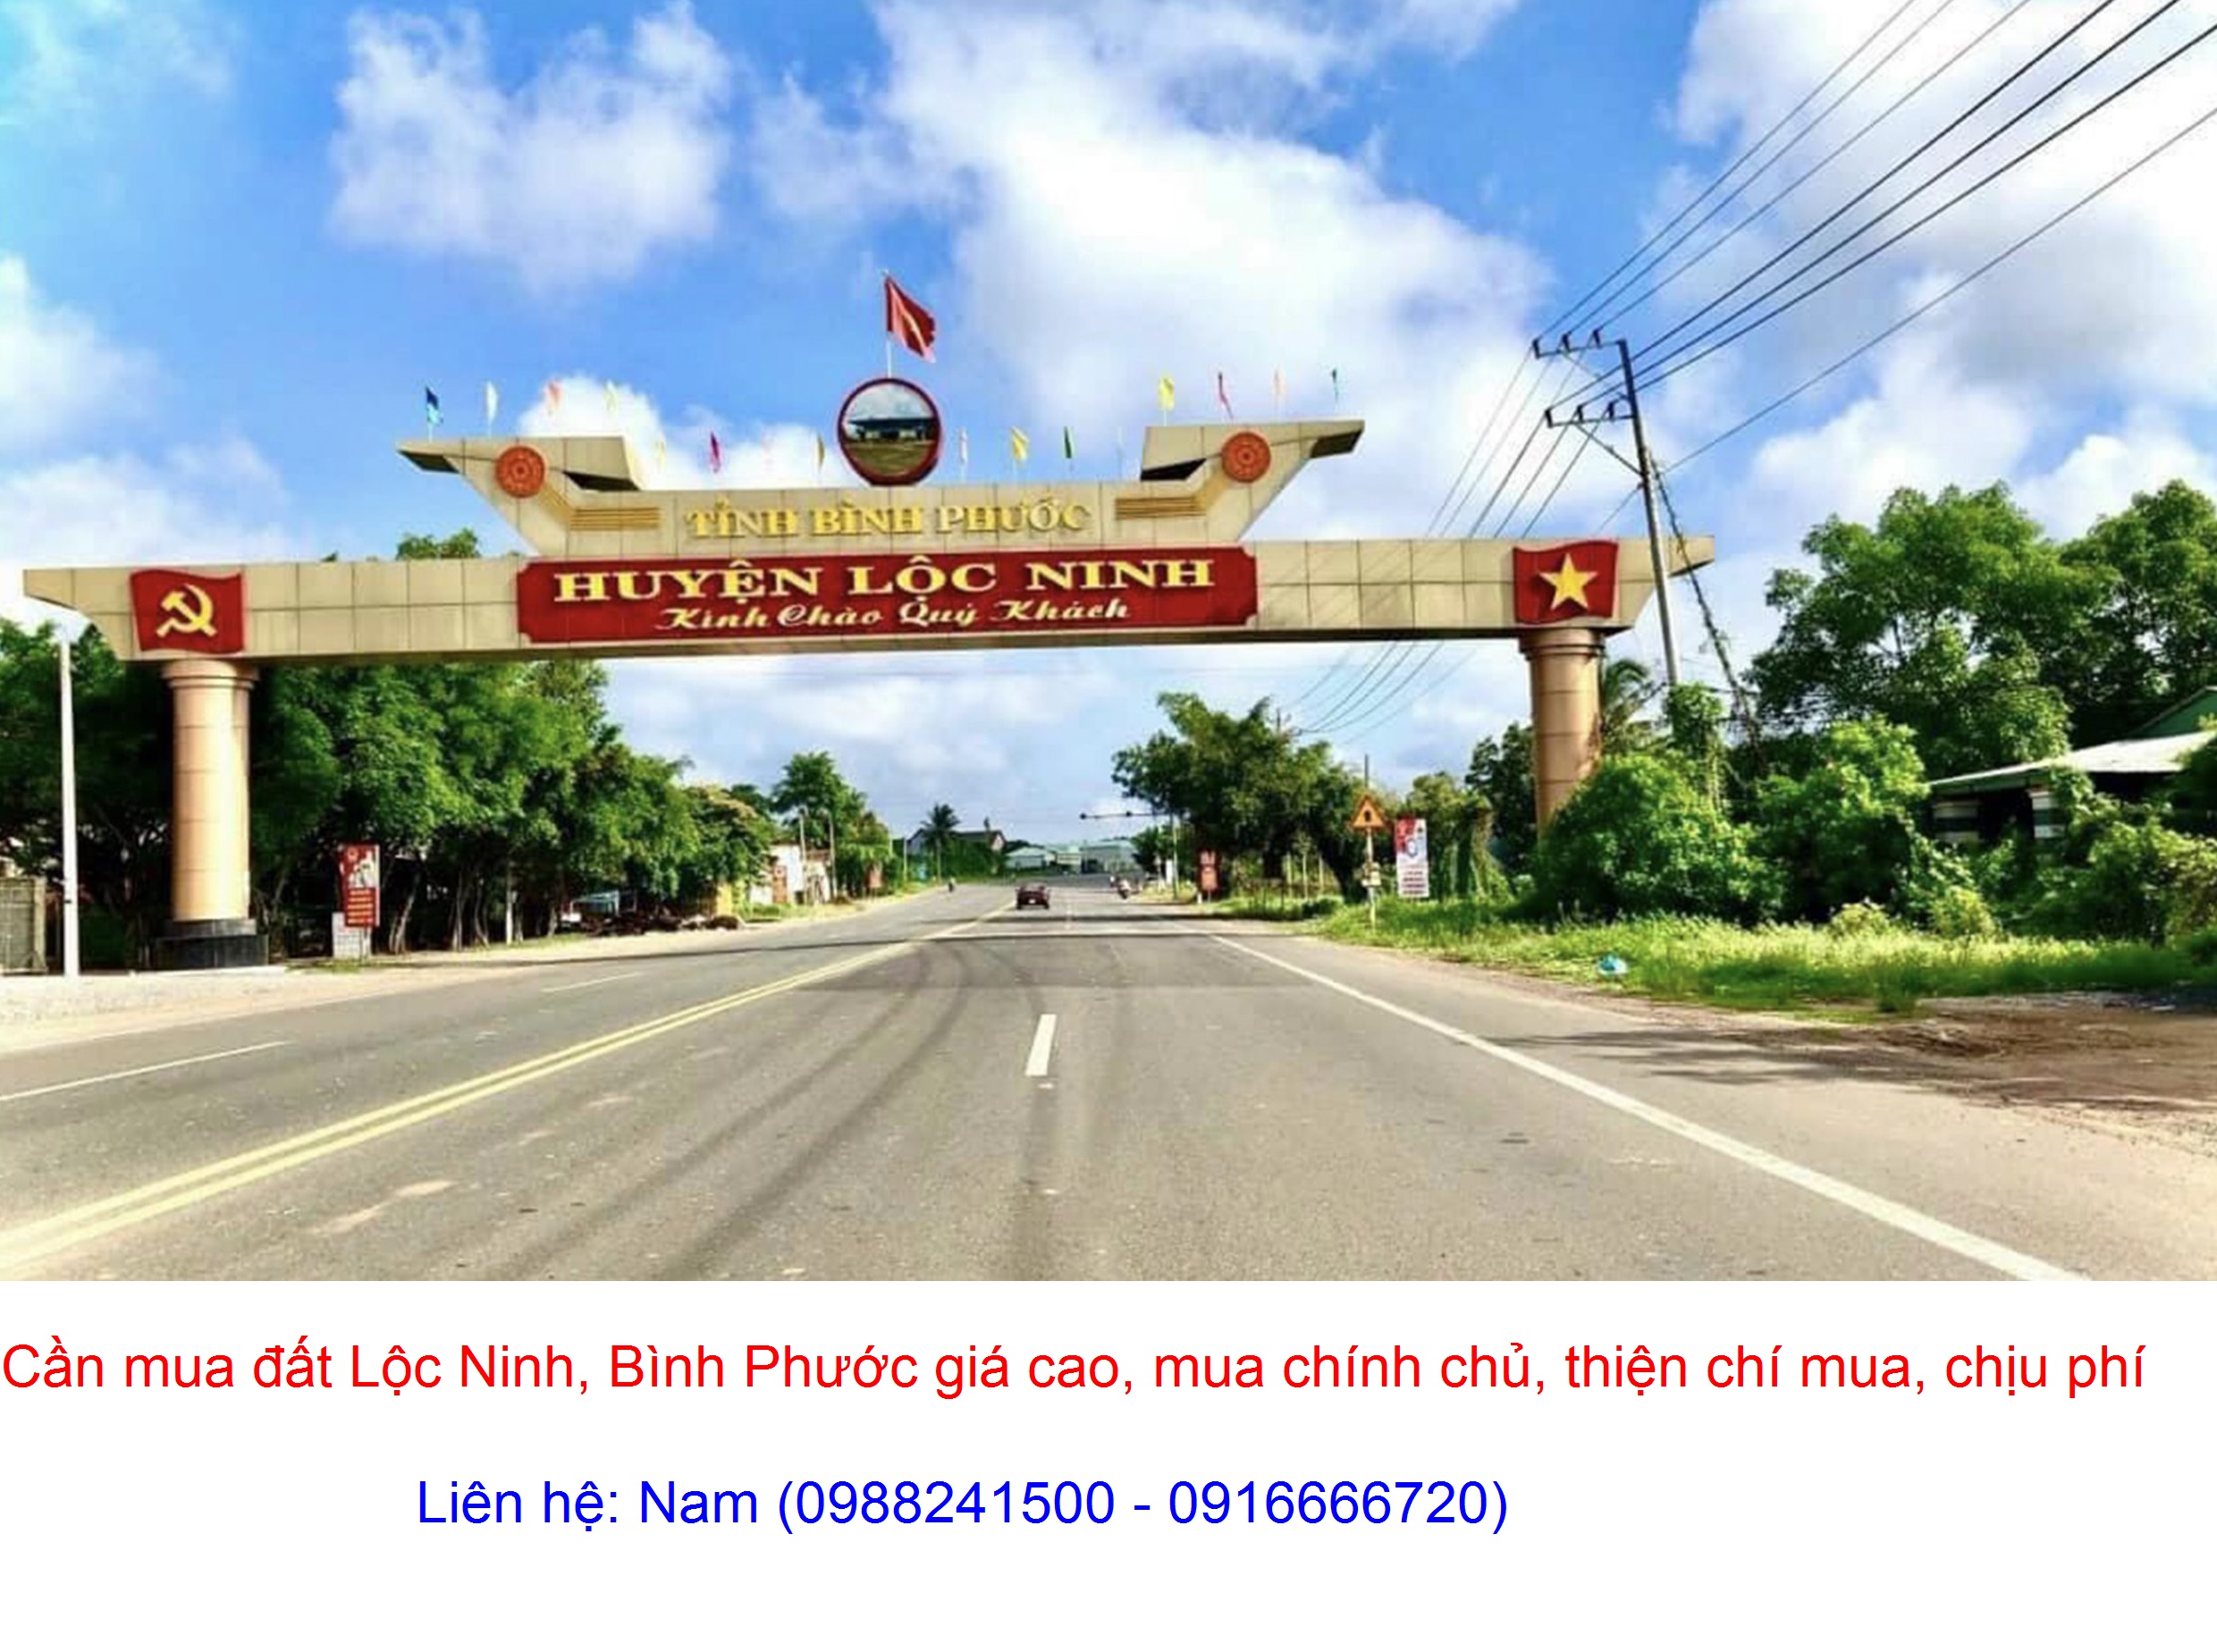 Mua đất Lộc Ninh, Bình Phước giá cao, mua chính chủ